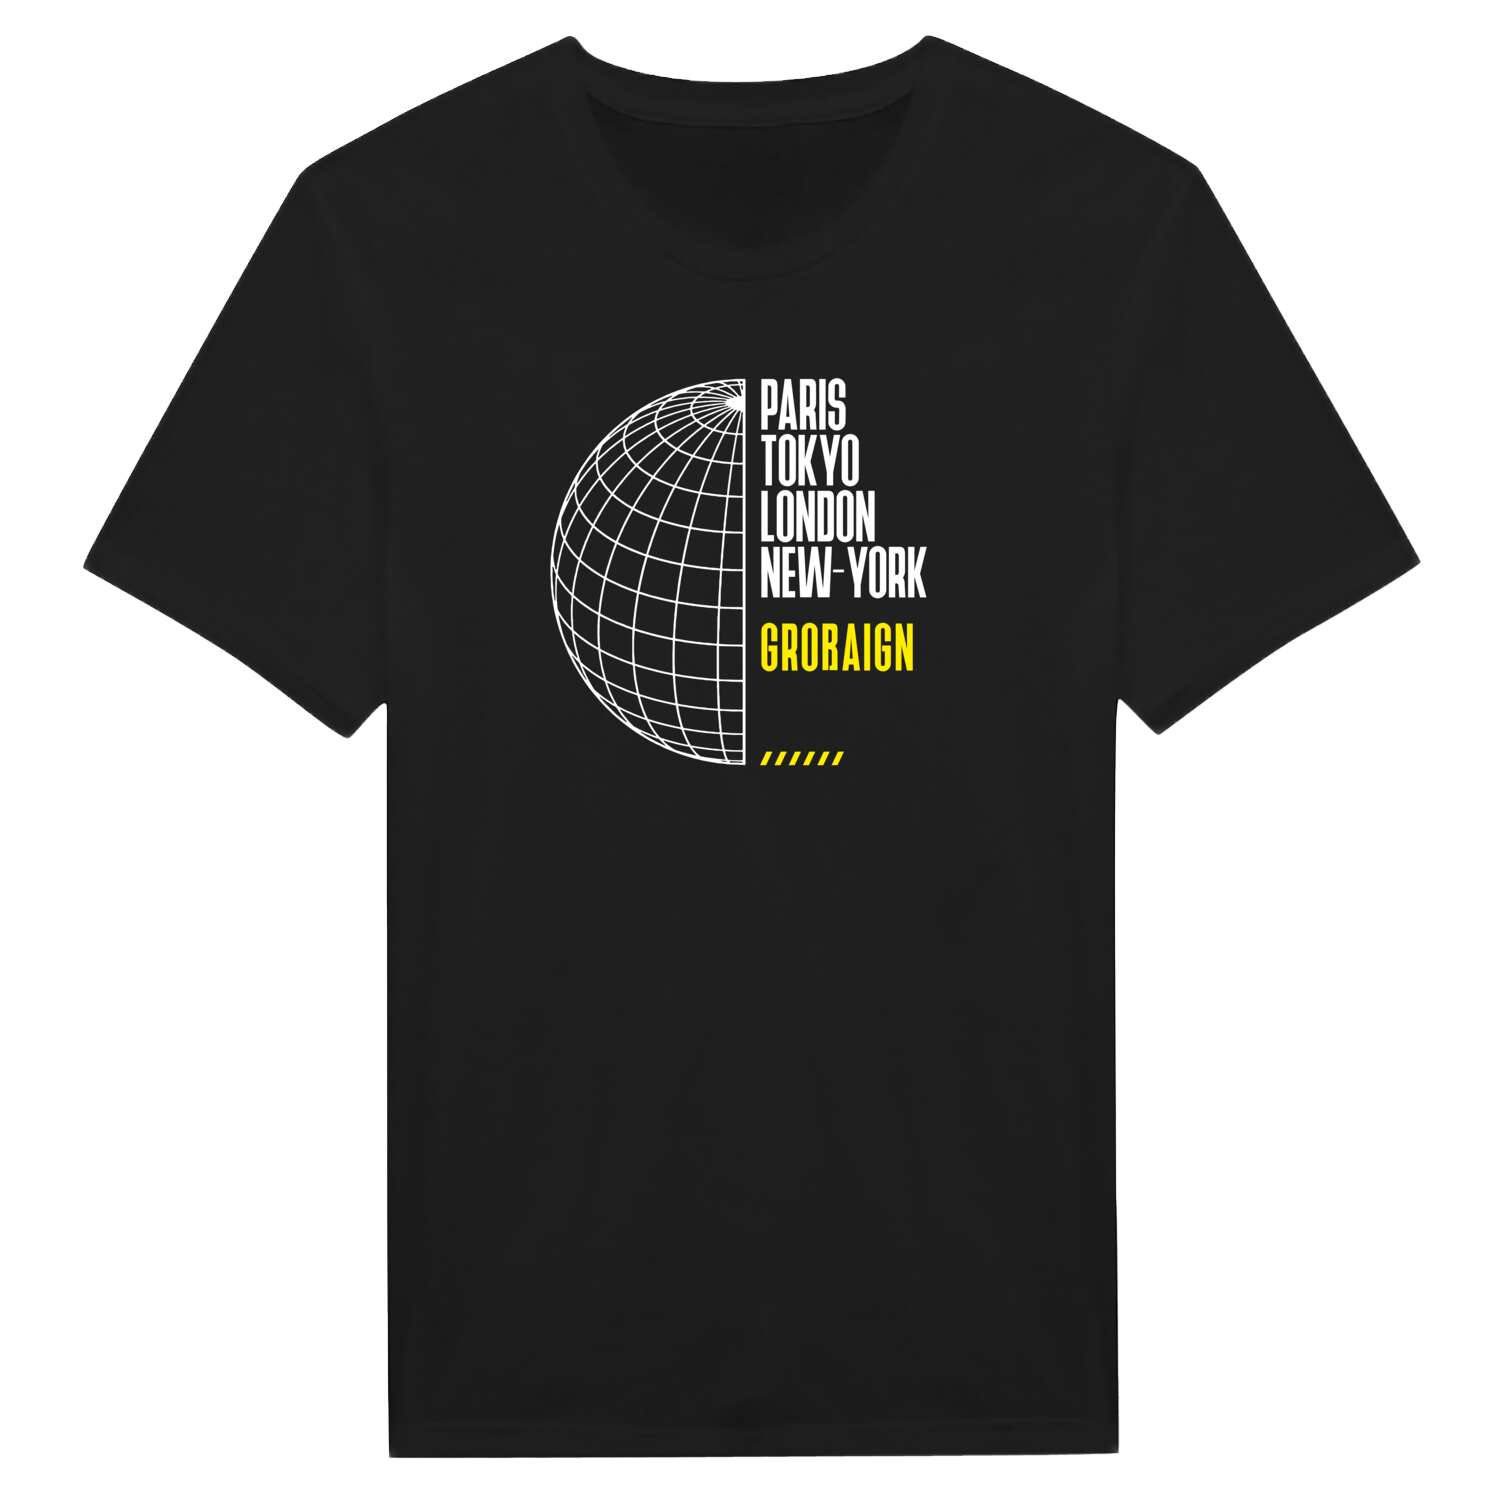 Großaign T-Shirt »Paris Tokyo London«